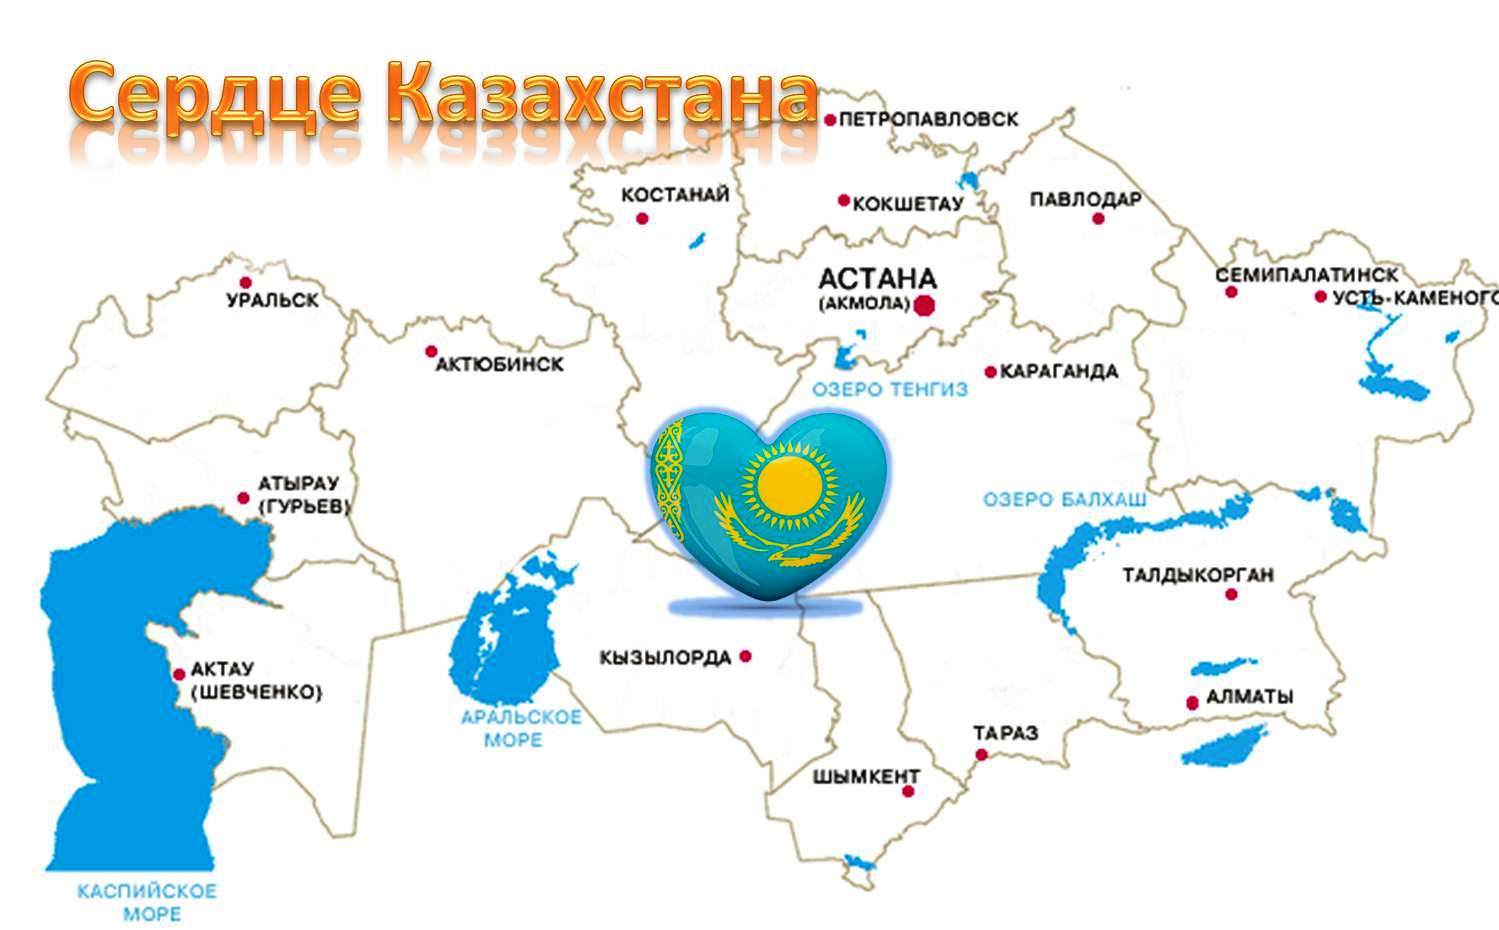 Казахстан это какая страна. Географическая карта Казахстана. Карта Казахстана с городами. Карта Казахстана со столицей Нурсултан. Крупные города Казахстана на карте.